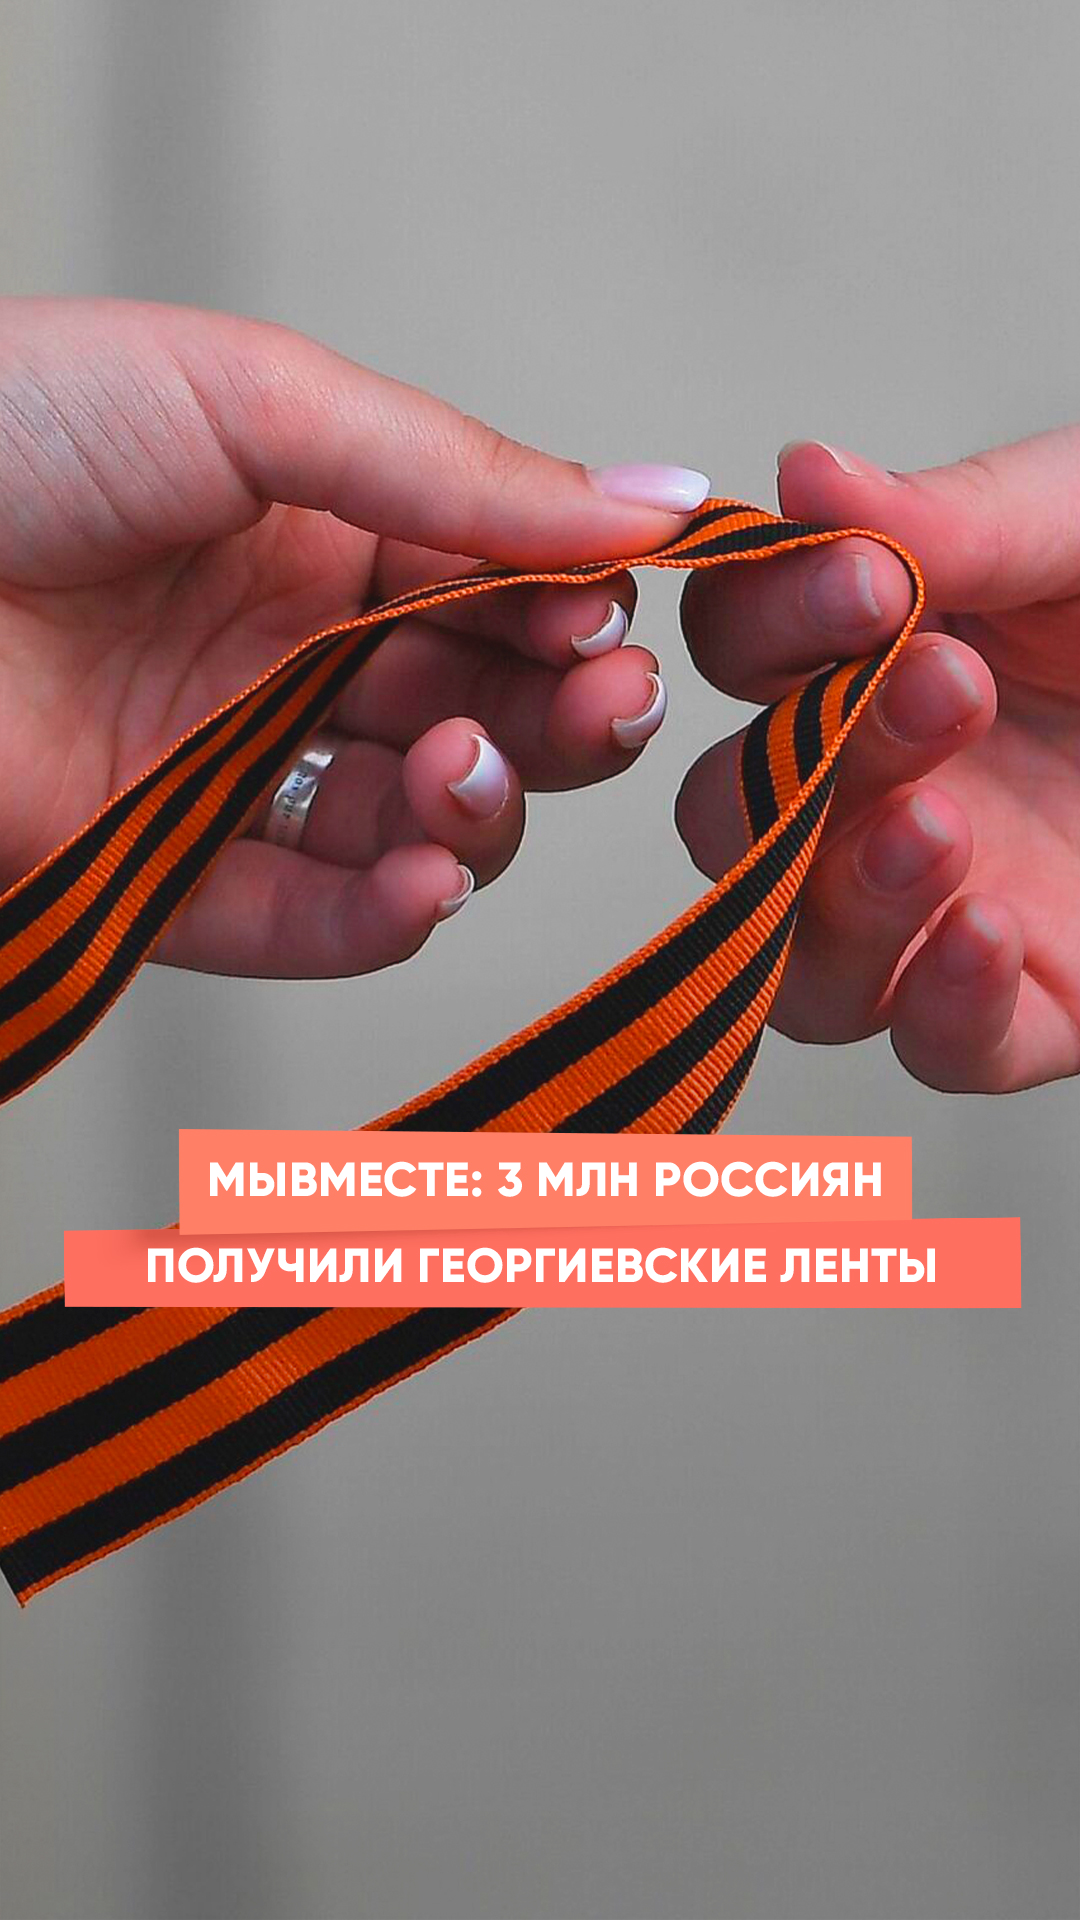 МыВместе: 3 млн россиян получили Георгиевские ленты